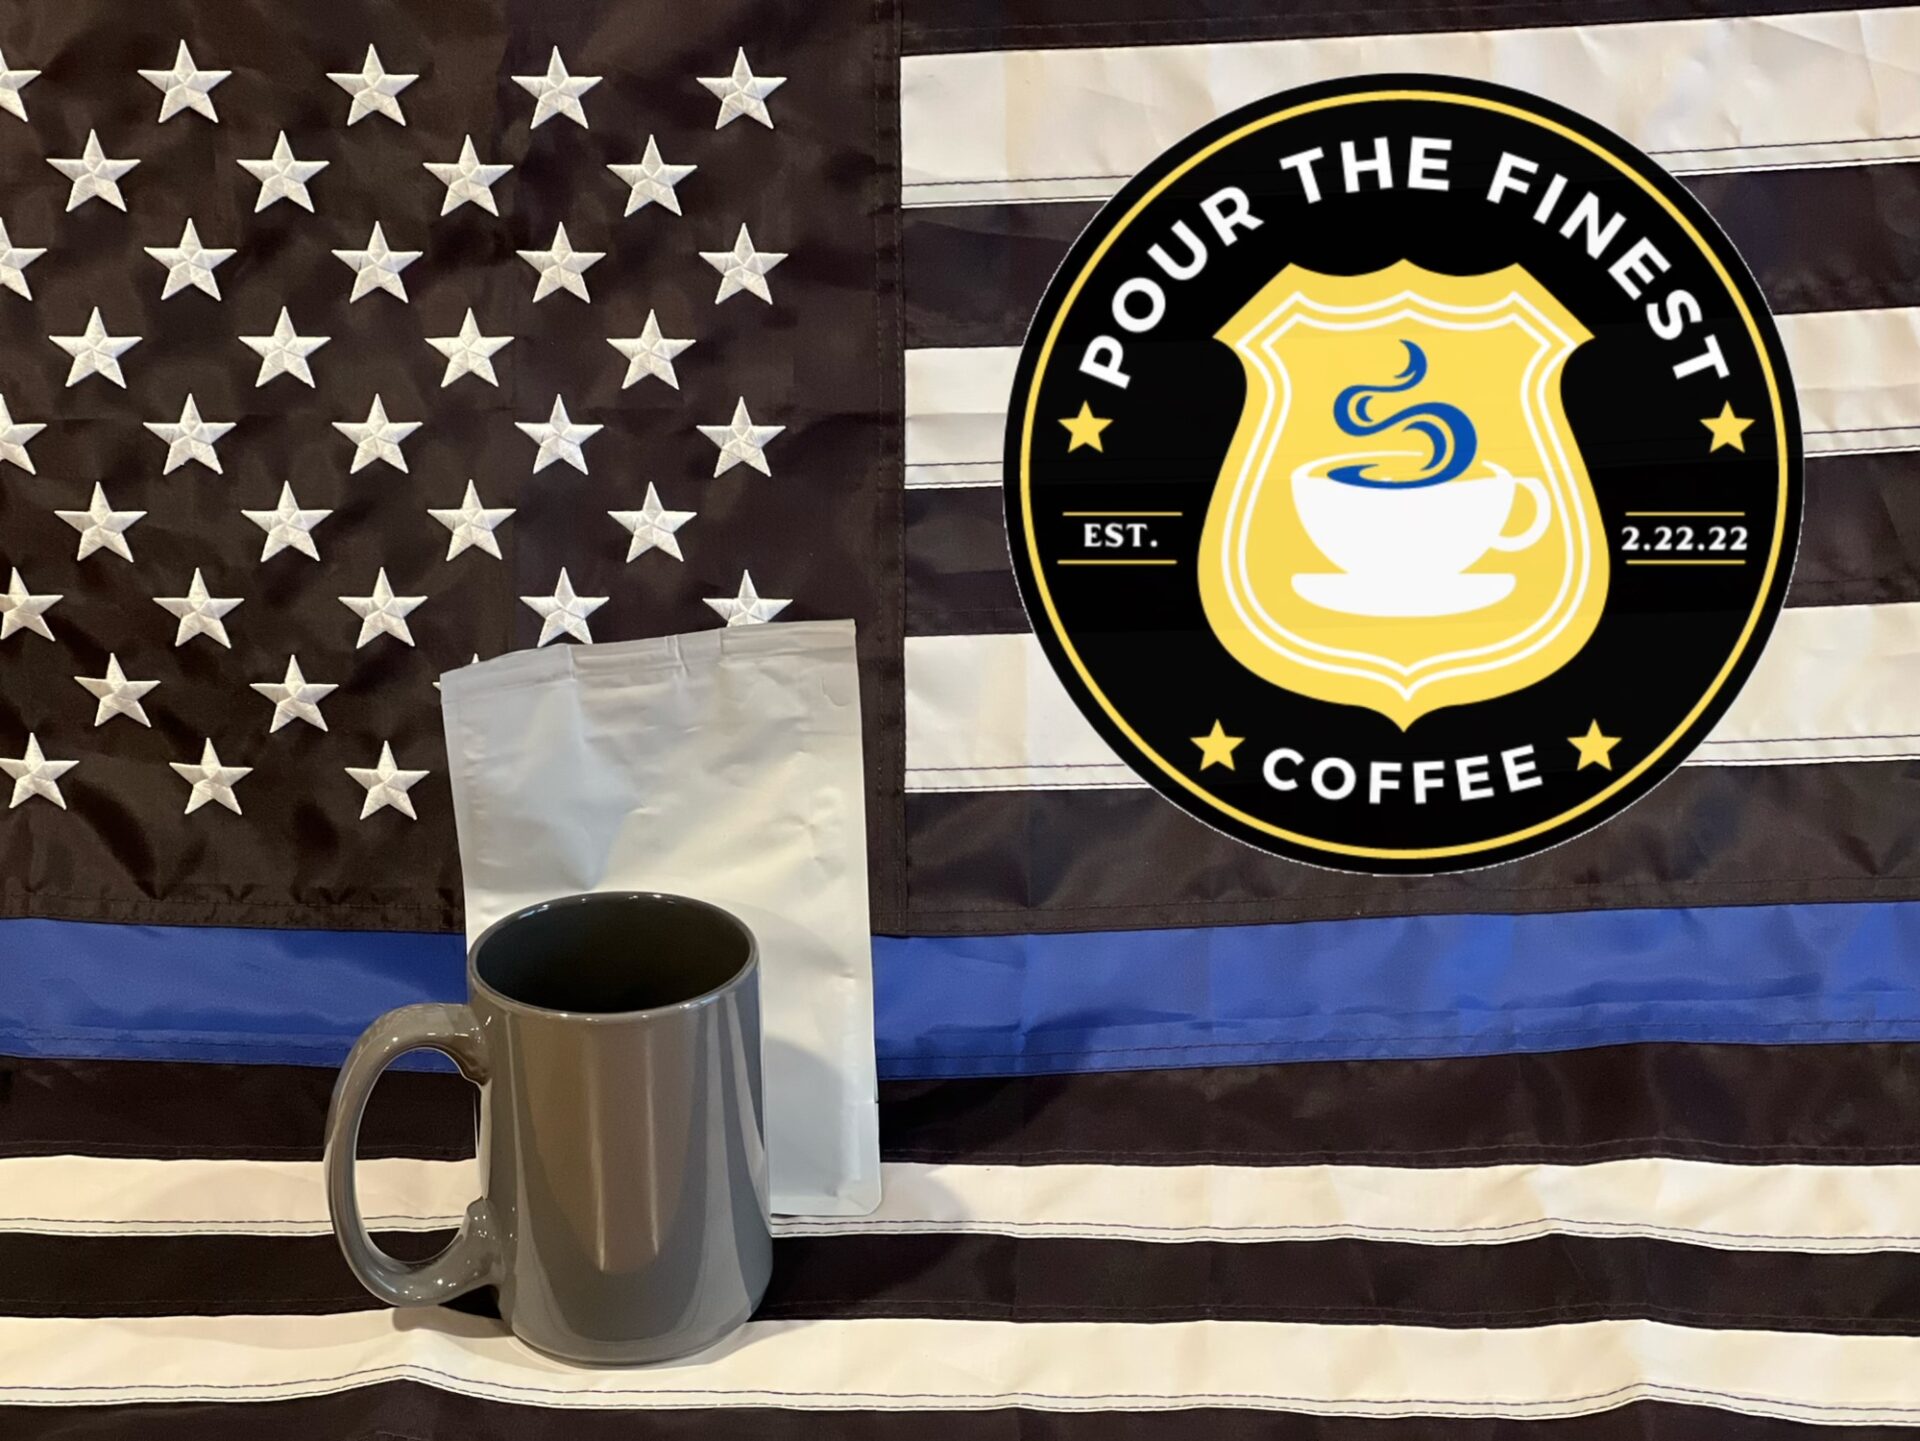 Coffee mug and a logo on a flag